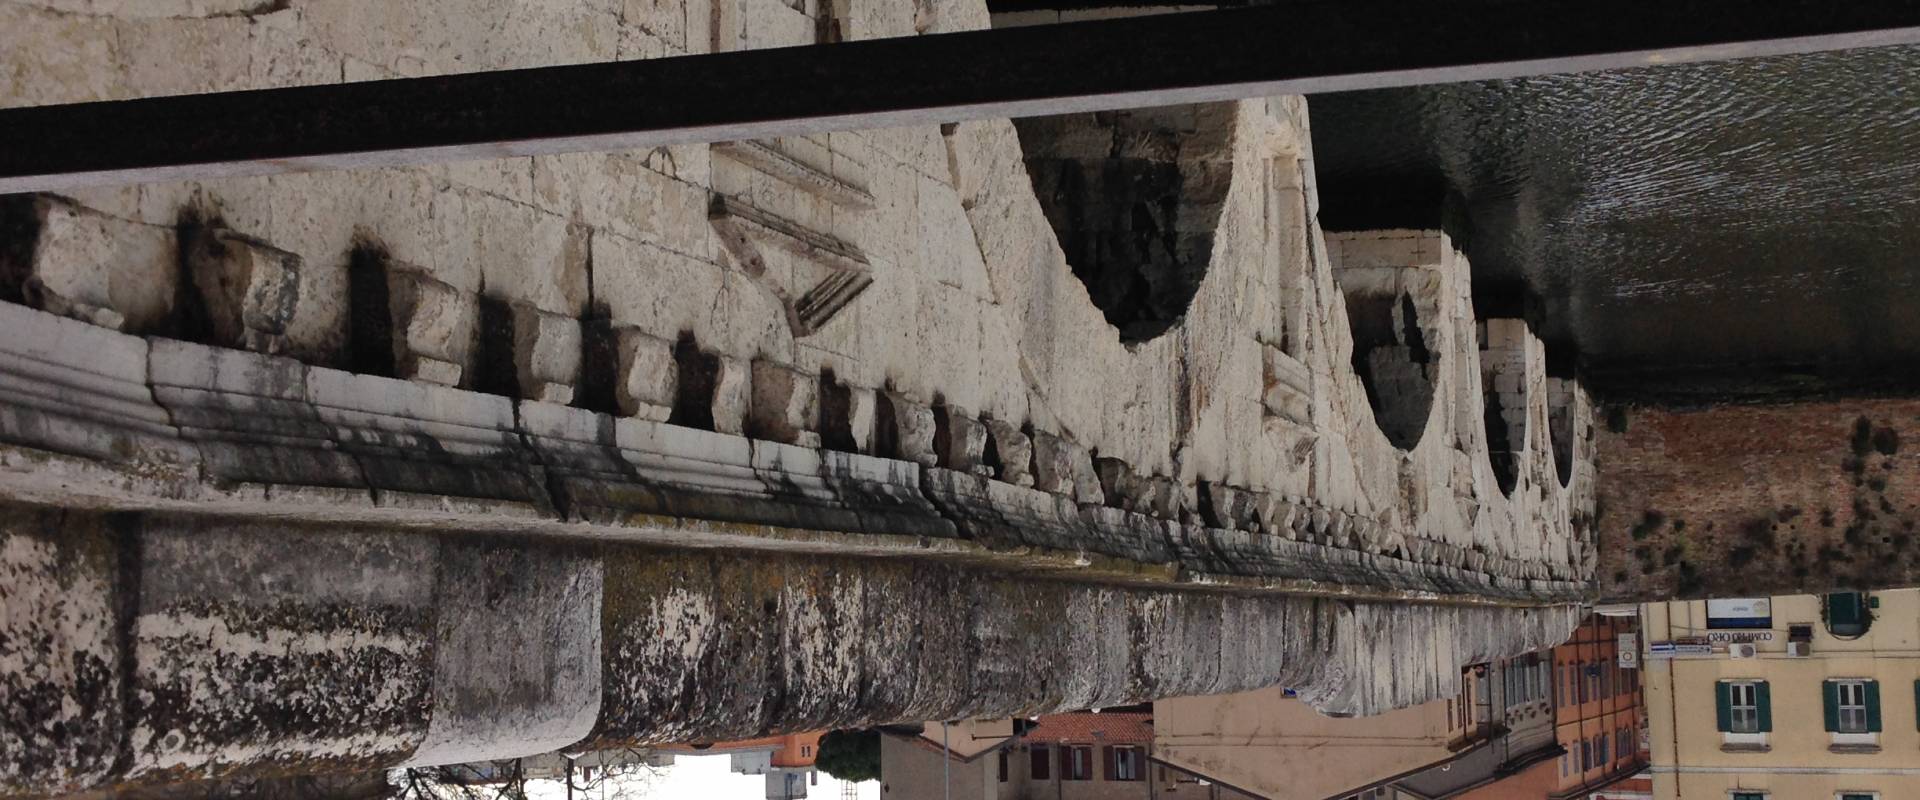 Tiberius' Bridge foto di Egjoni98